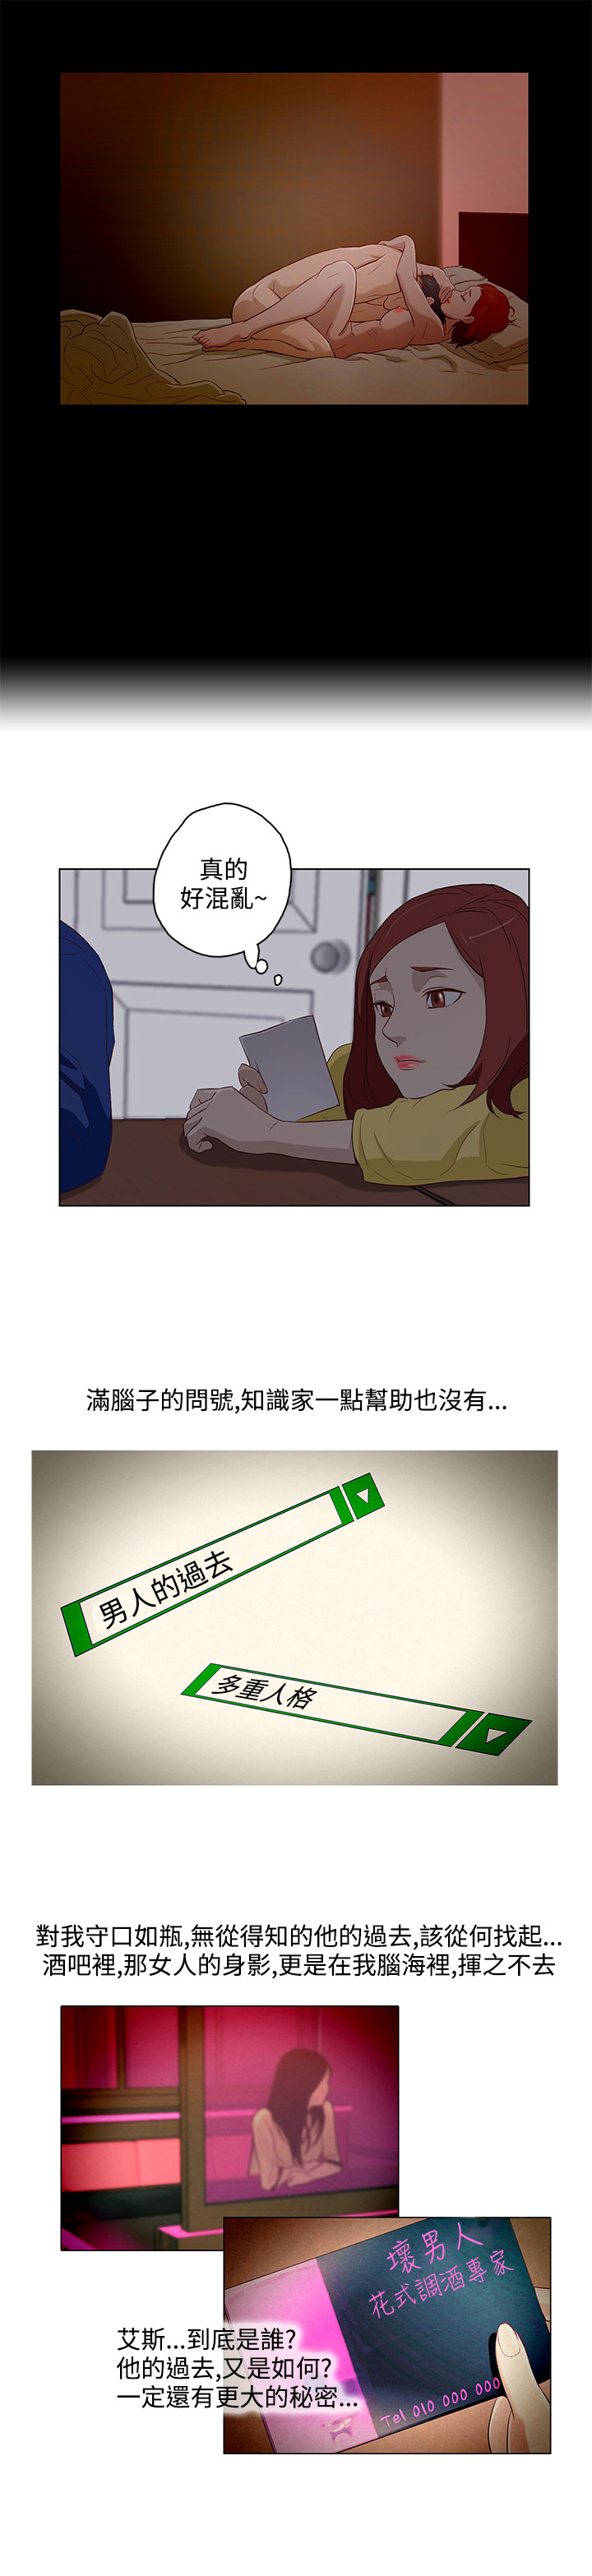 中文韩臨今天的老公Ch.01-14 [中国語]